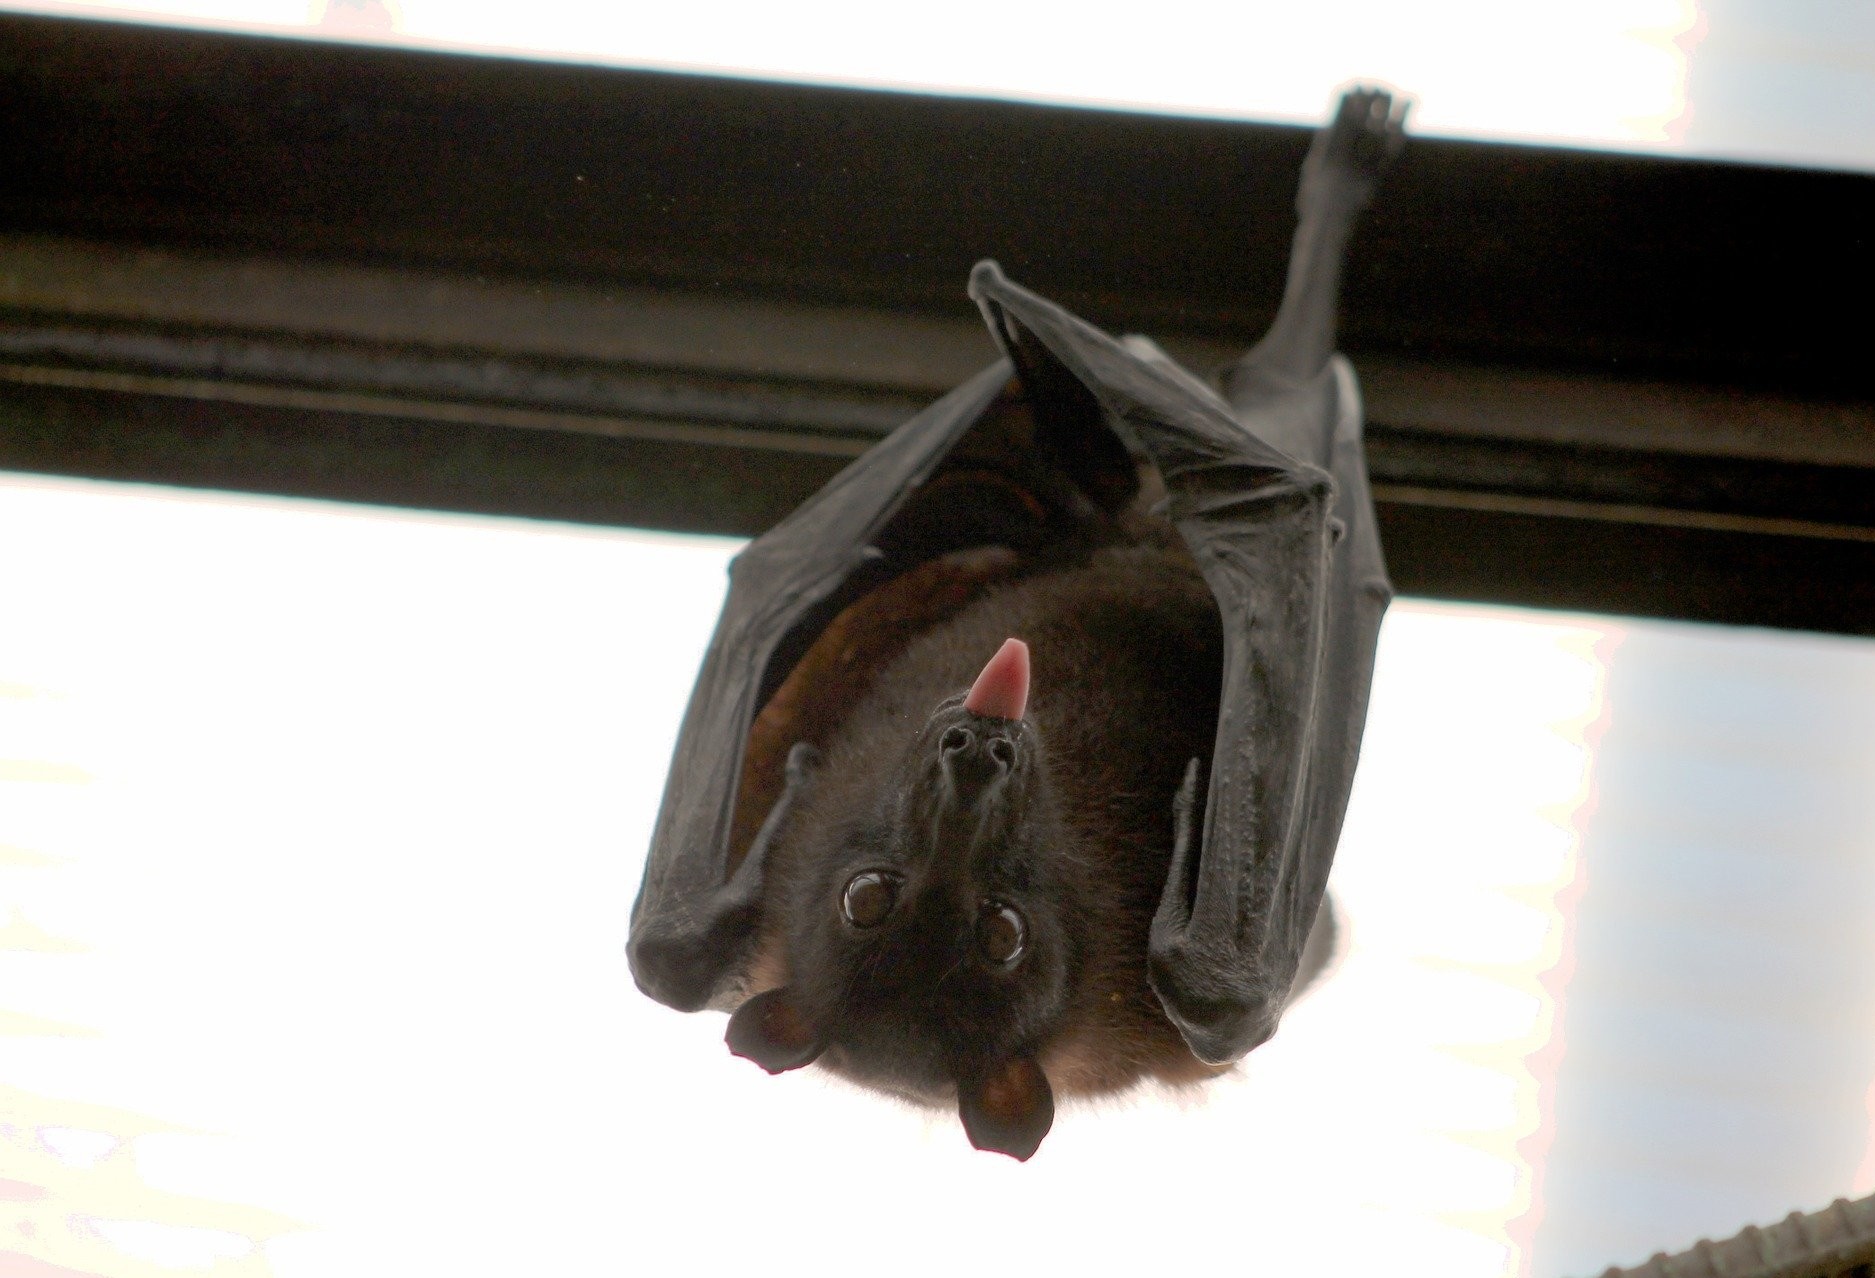 Confirmado dois casos de morcegos com raiva, em Cascavel